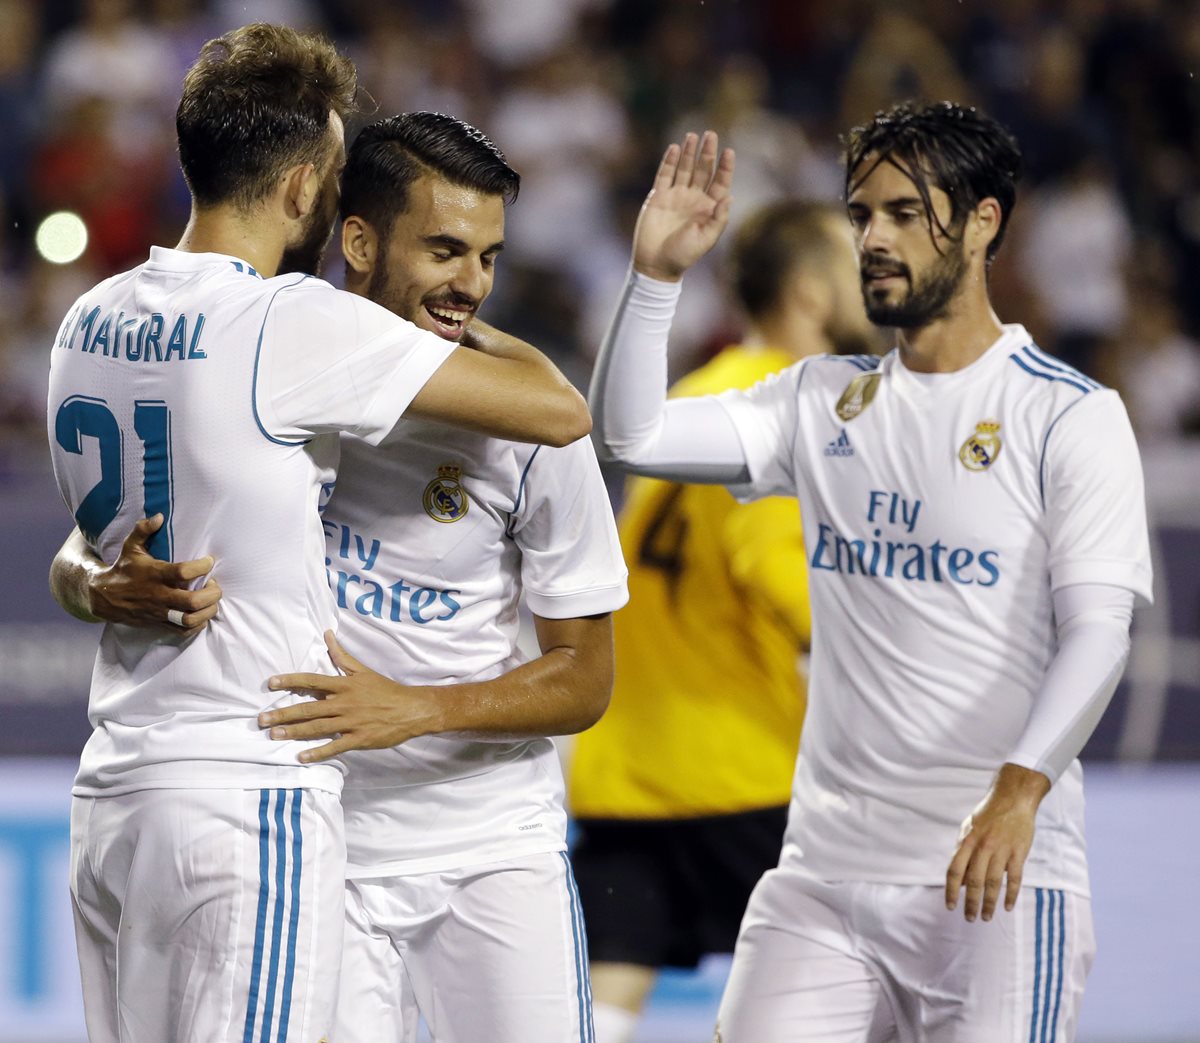 El Real Madrid tuvo una pretemporada agridulce pero busca quedarse con el título contra el United. (Foto Prensa Libre: AP)